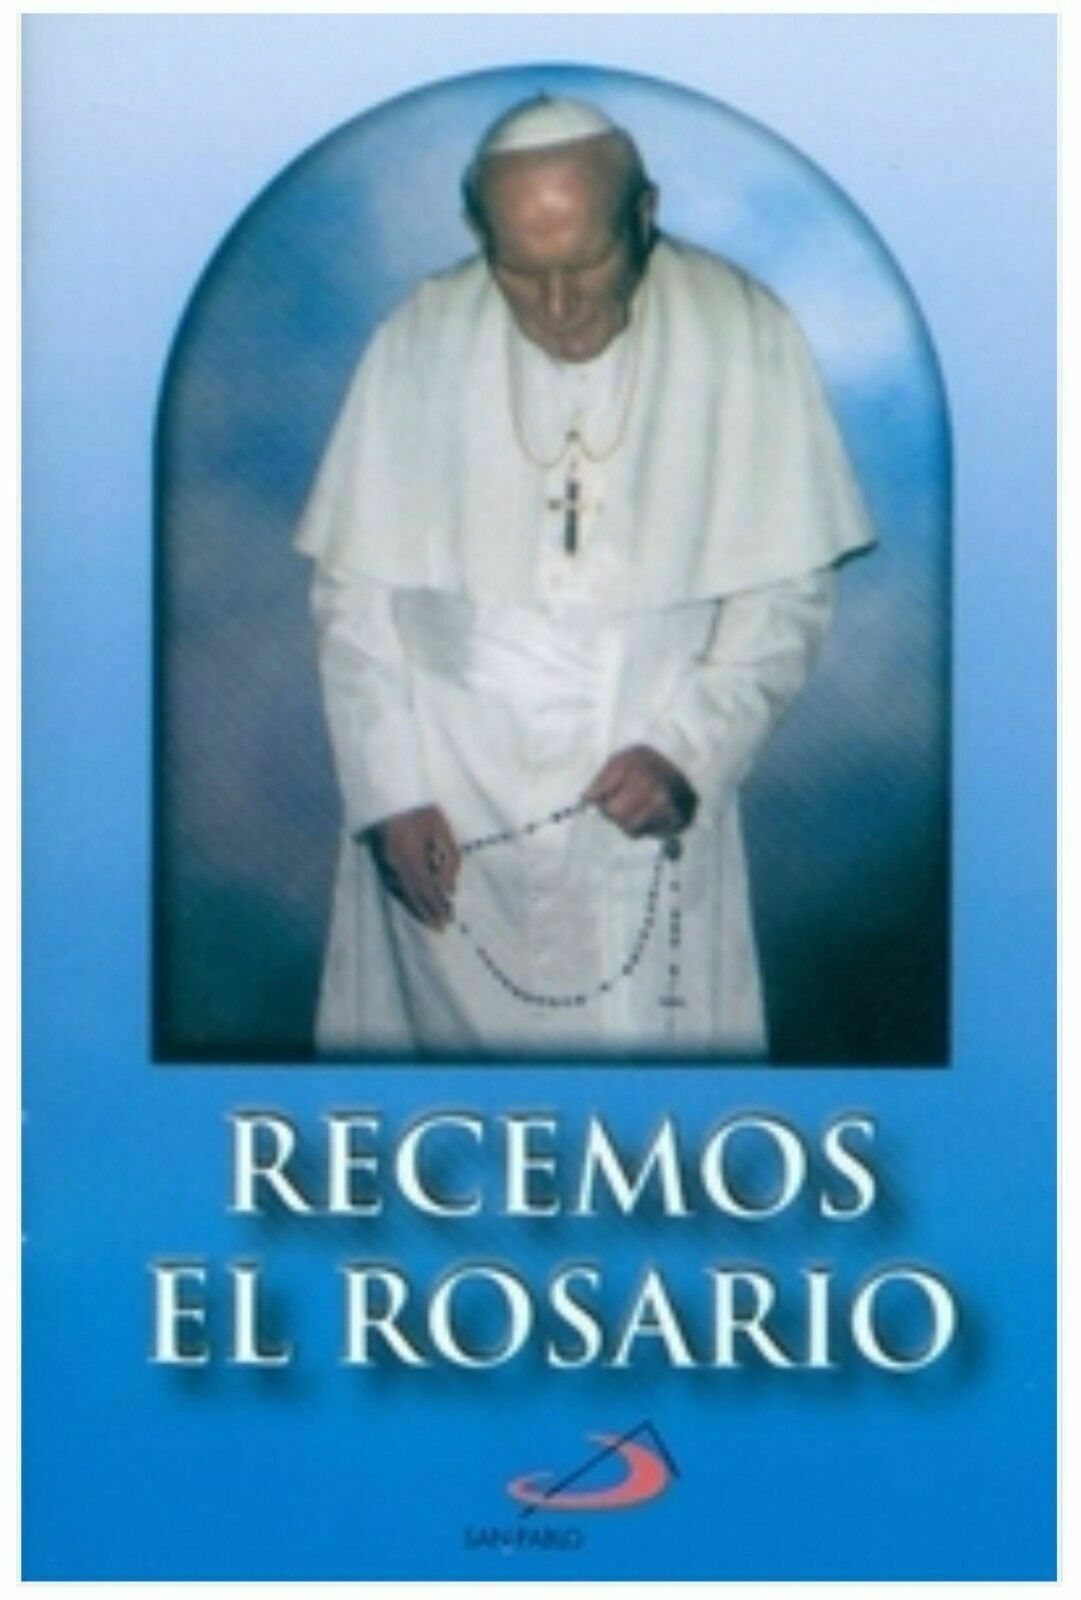 Recemos el Rosario - Guia para rezar el Rosario con paginas e imagenes a color